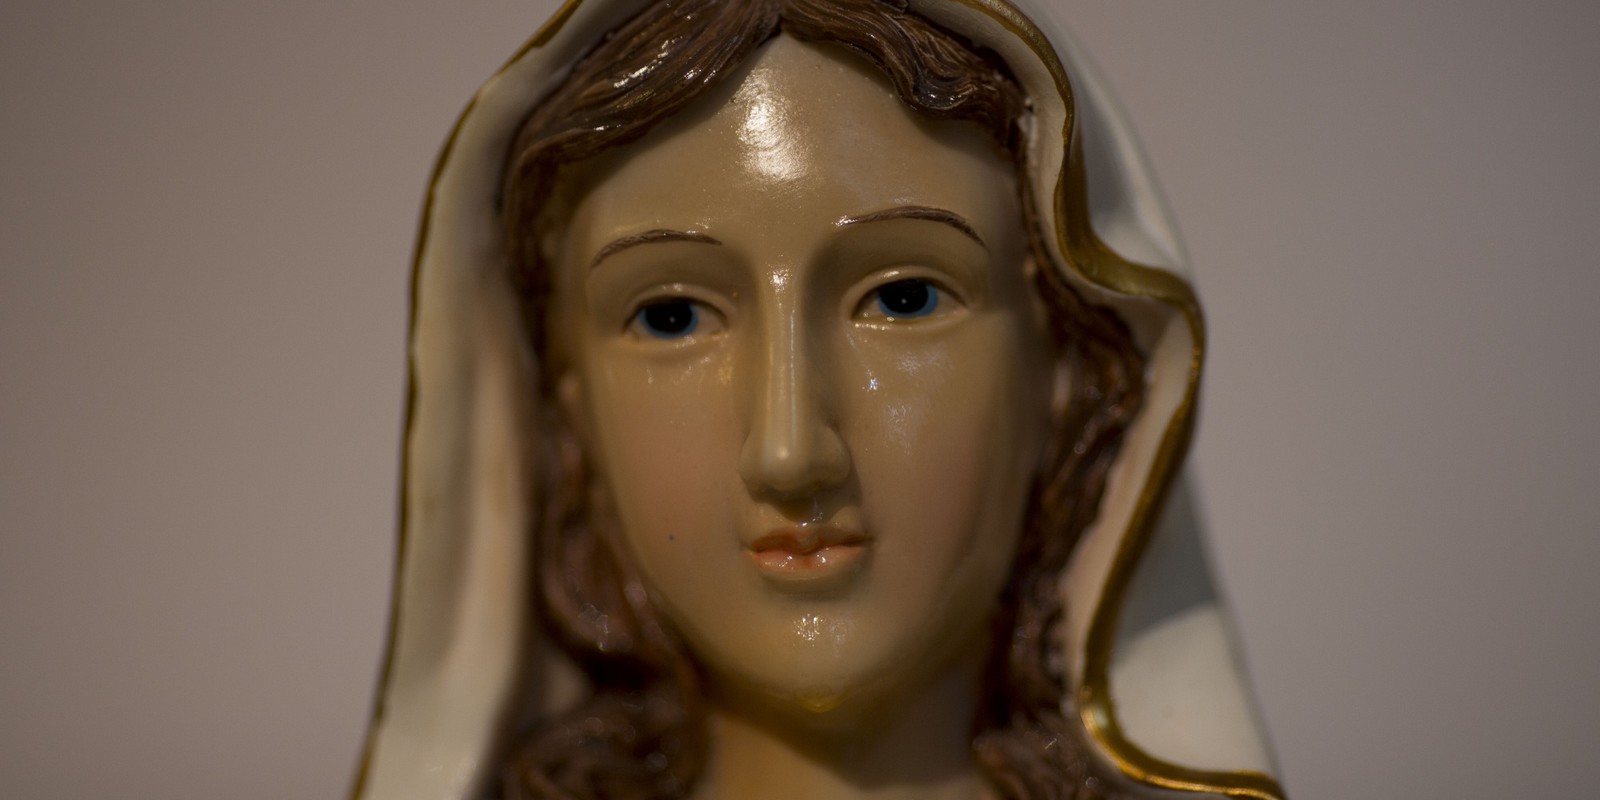 Imágenes de la Virgen María Lloran y Sangran por el mundo ¿por qué?